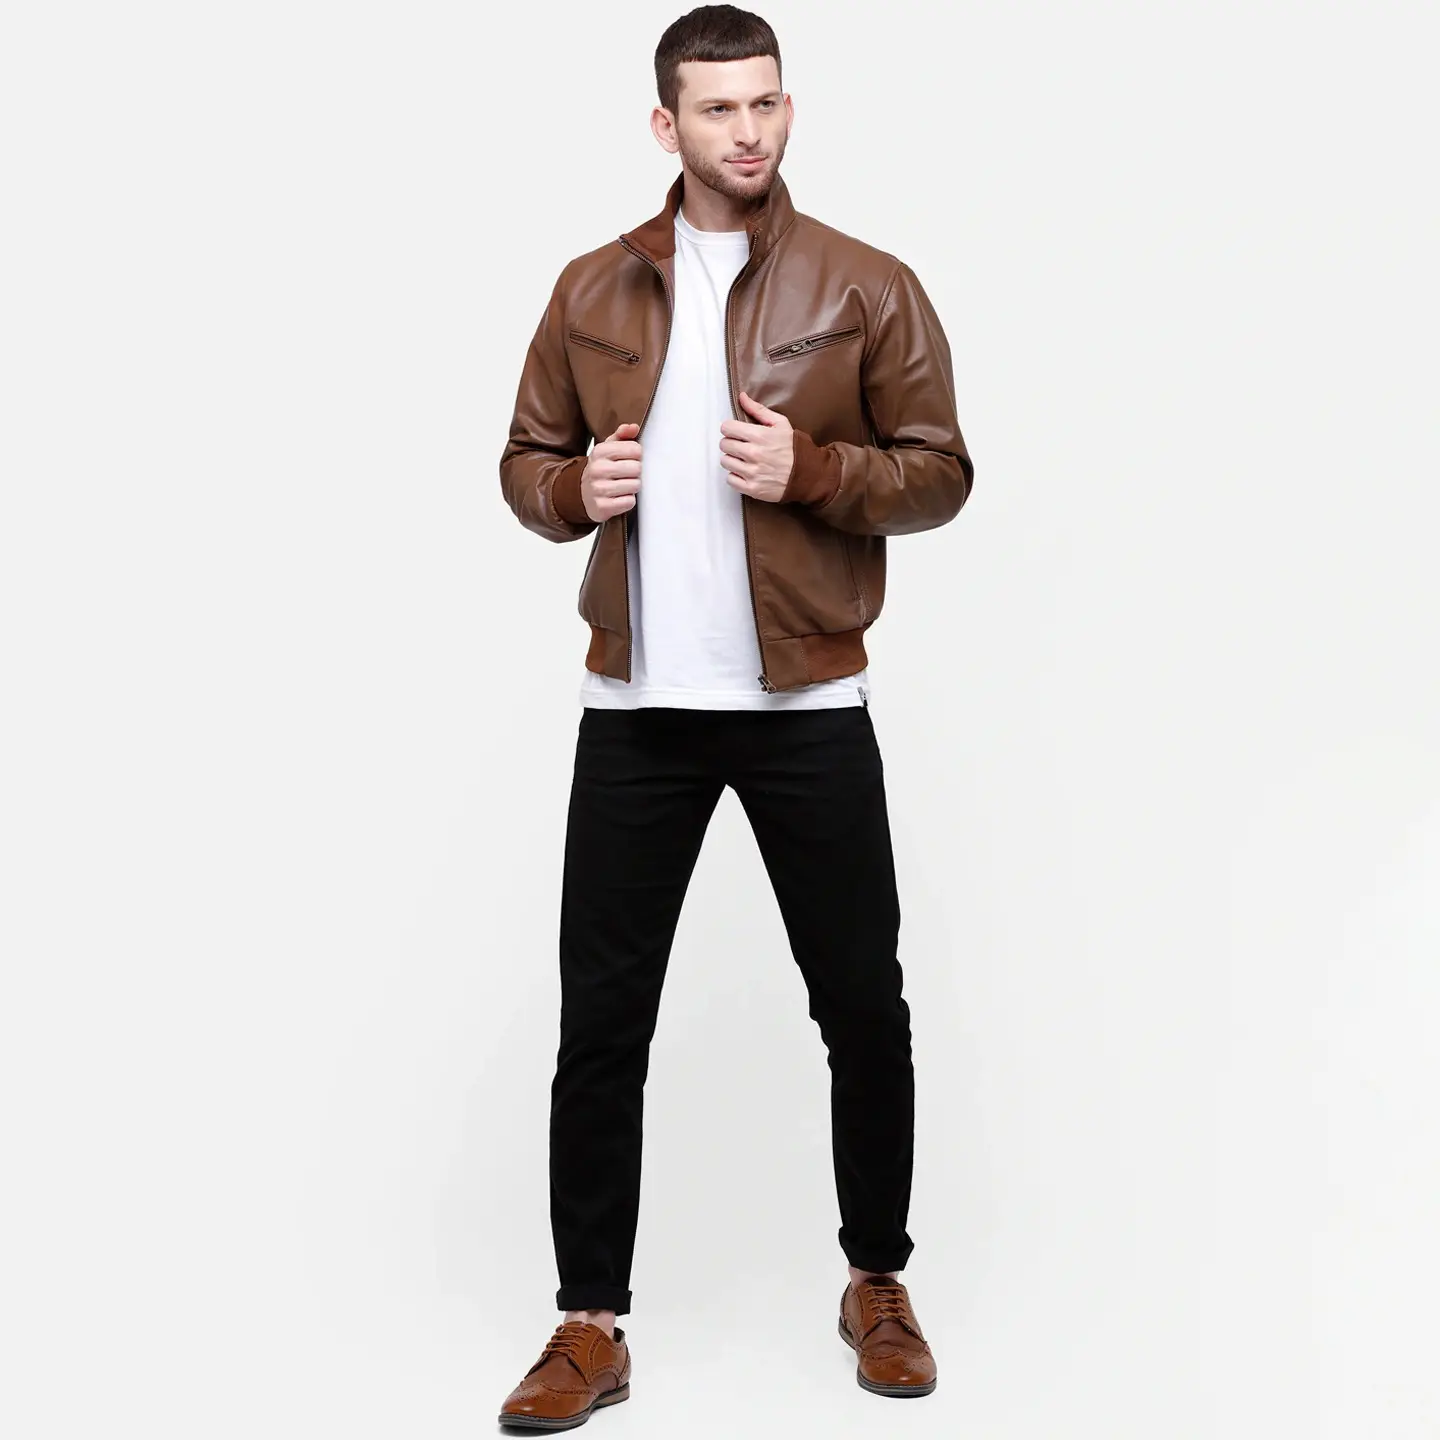 새로운 패션 디자인 소년 클래식 브라운 컬러 재킷 남성용 슬림 핏 가죽 코트 남성 자켓